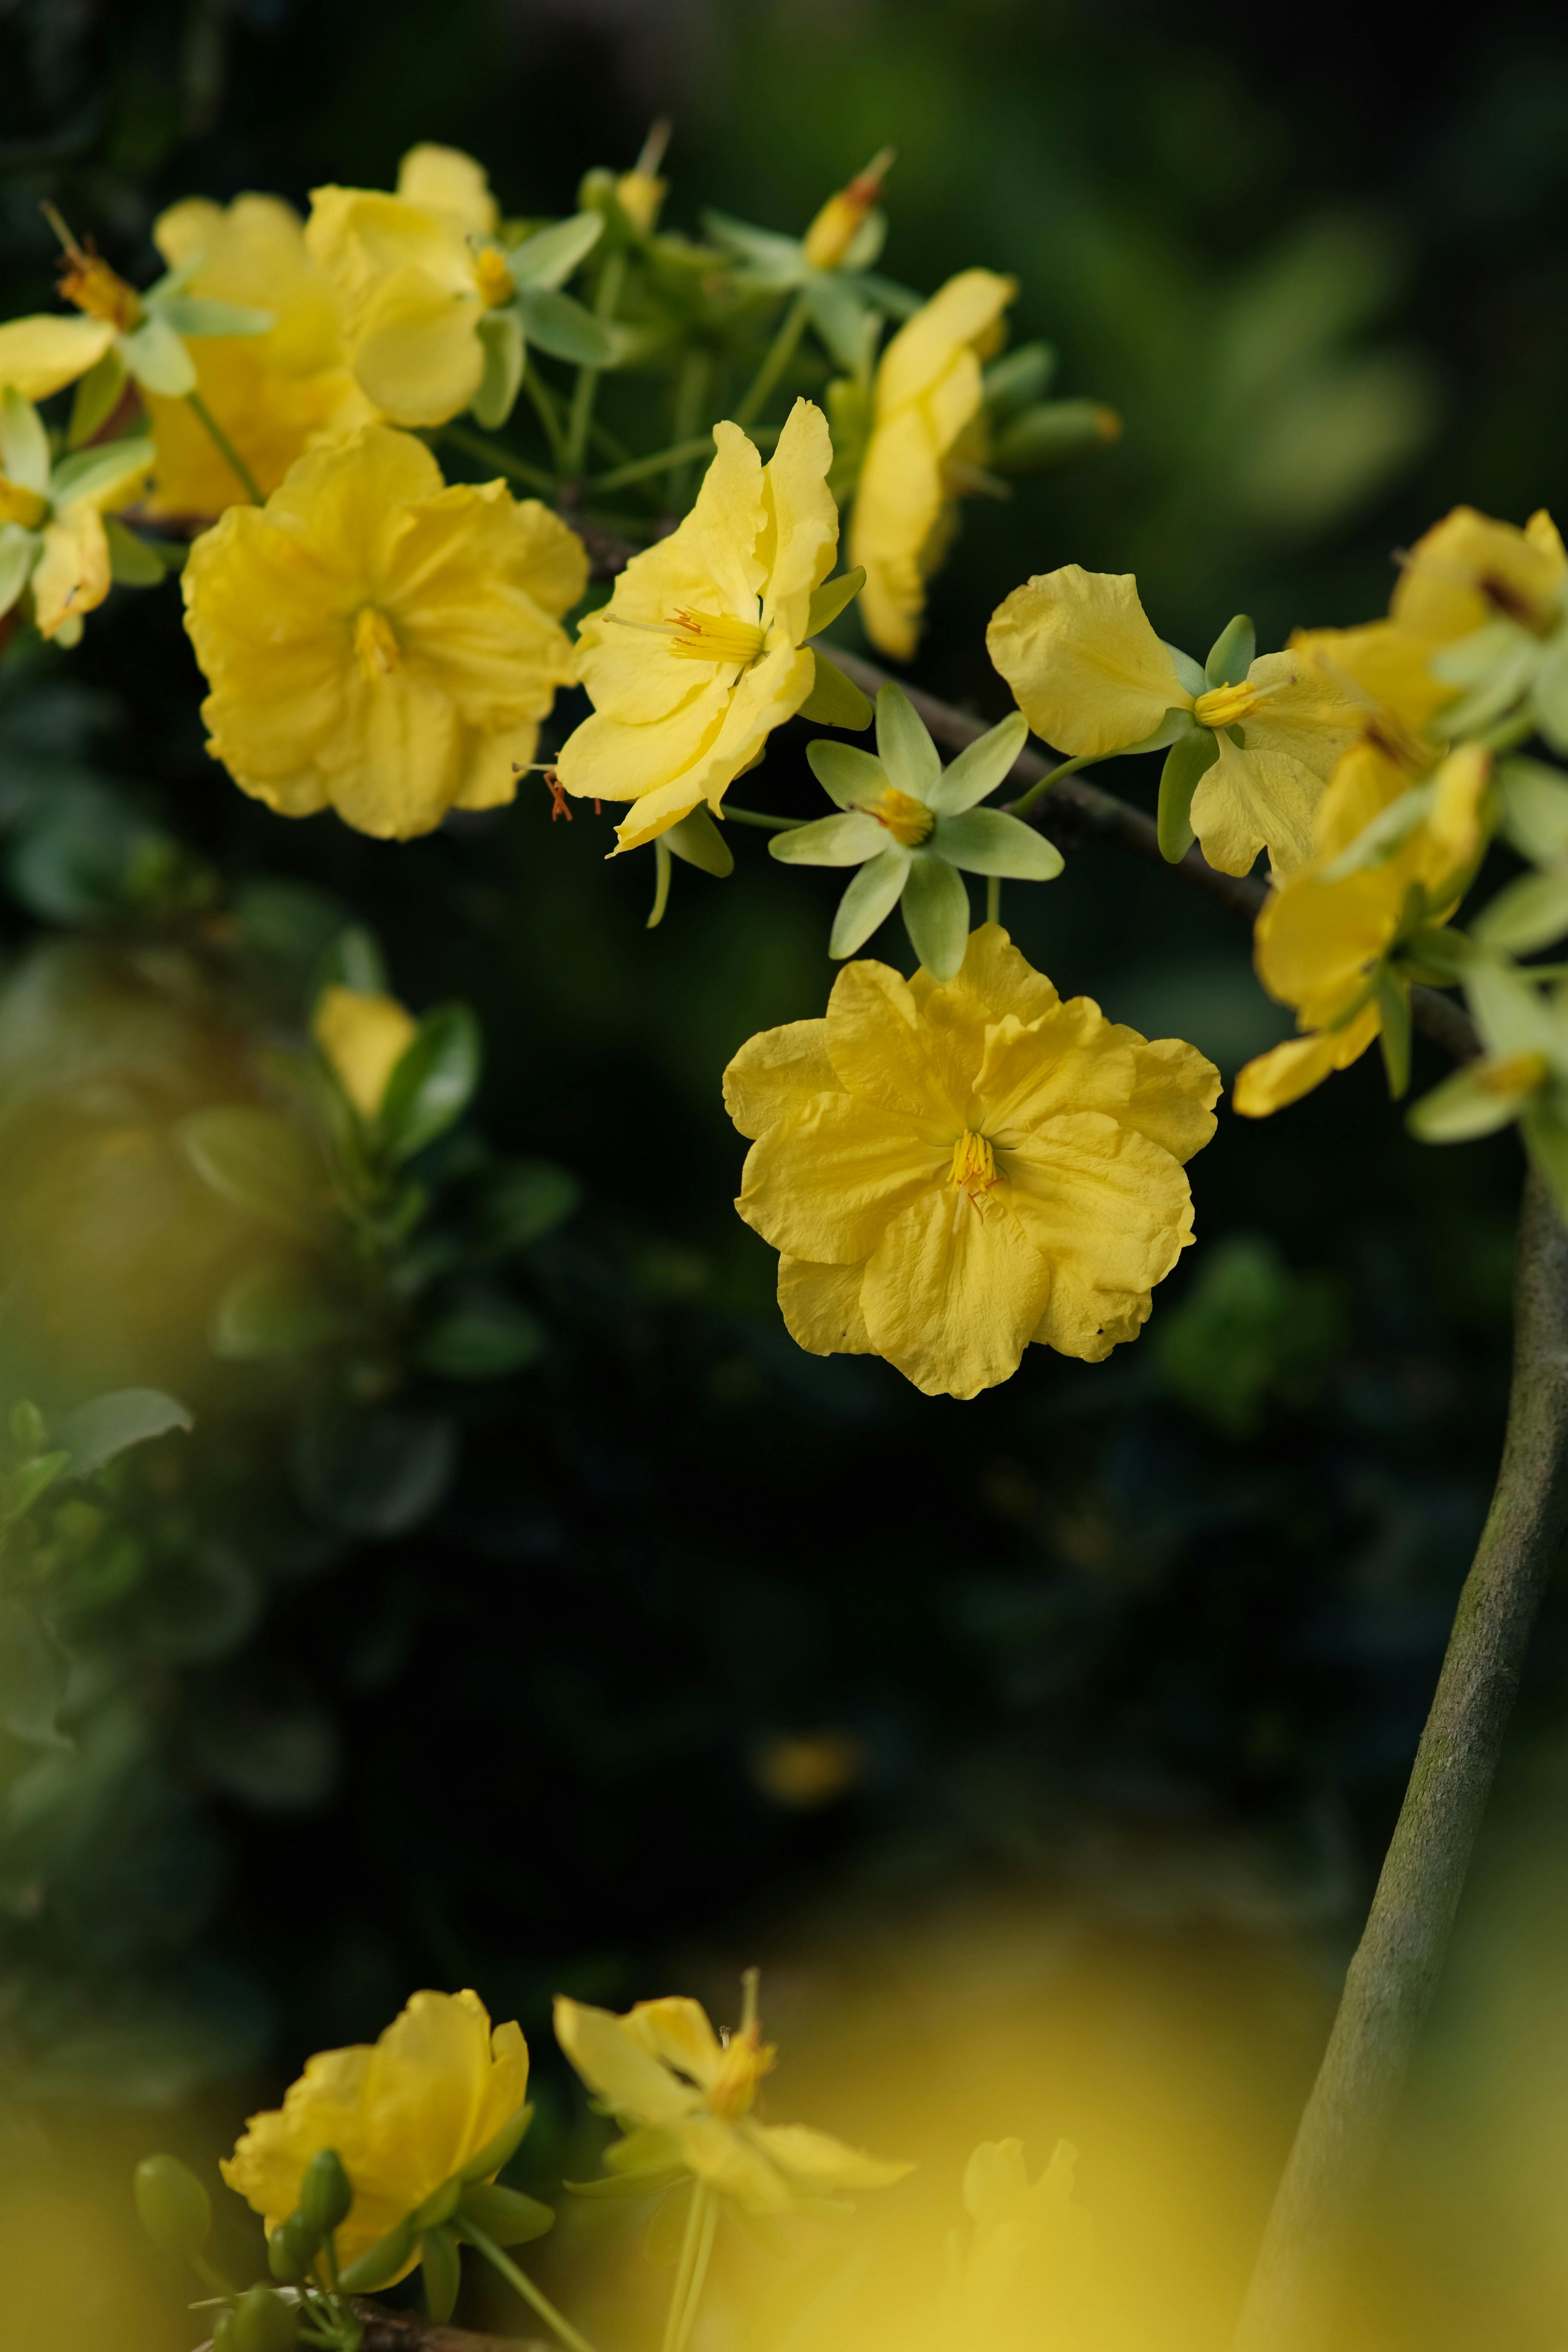 Những bông hoa màu vàng nhỏ bé đang thu hút sự tò mò của bạn? Hãy đến với chúng tôi để khám phá nhiều hơn về loài hoa này và cùng ngắm nhìn những hình ảnh đầy phấn khích. Những bông hoa mặt trời nổi bật giữa những cánh cỏ xanh mướt sẽ làm bạn trở nên sảng khoái và phấn chấn cả ngày.